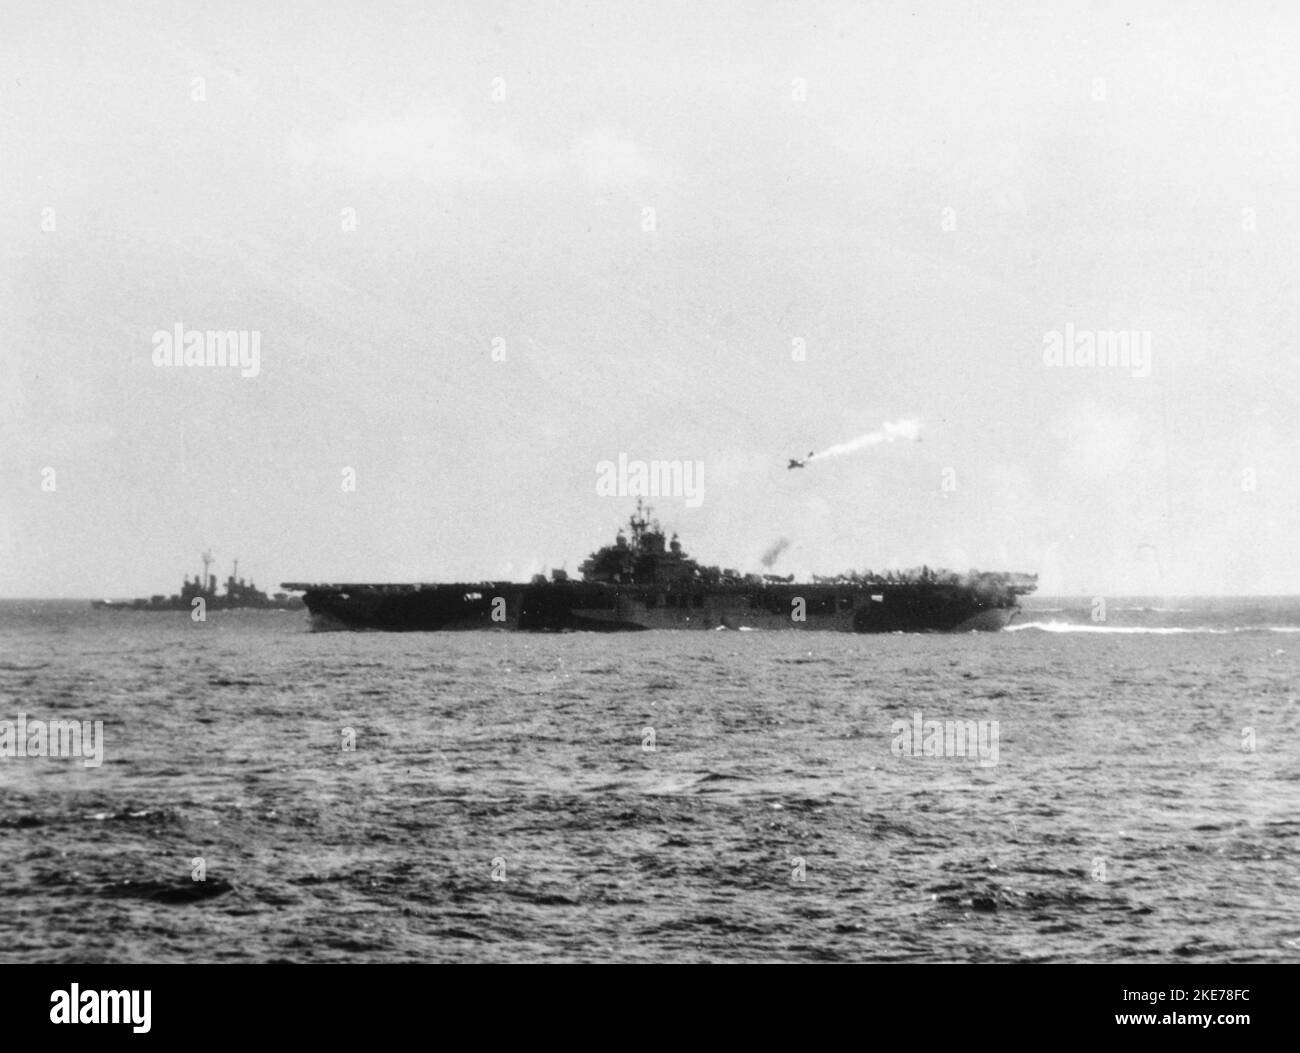 Le porte-avions USS Essex de la Marine américaine (CV-9) sur le point d'être touché par un avion japonais Yokosuka D4Y 'Judy' lors de l'attaque de Kamikaze, le 25 novembre 1944. Banque D'Images